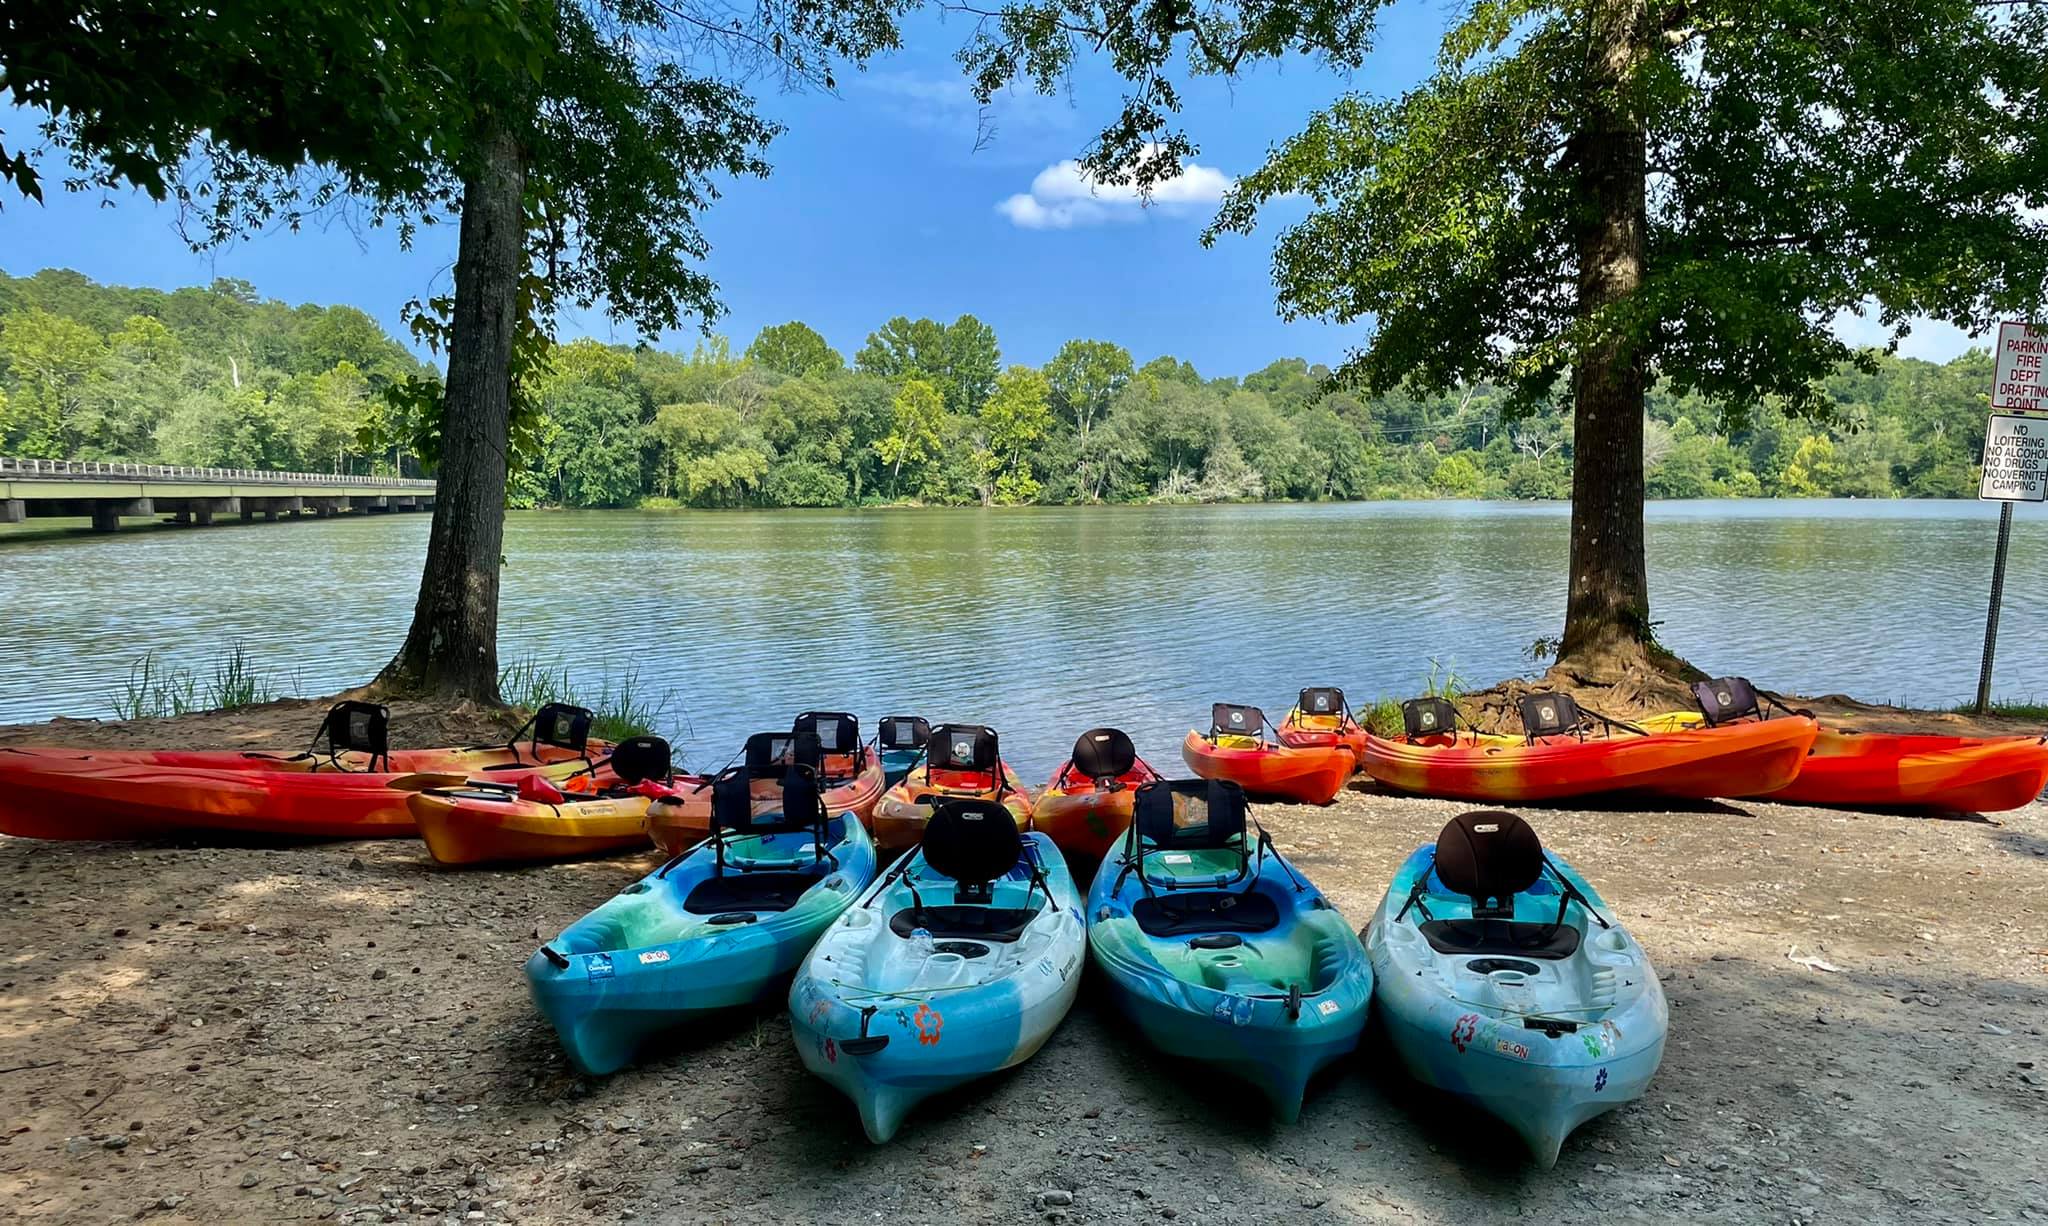 Fleet of kayaks on lake bank